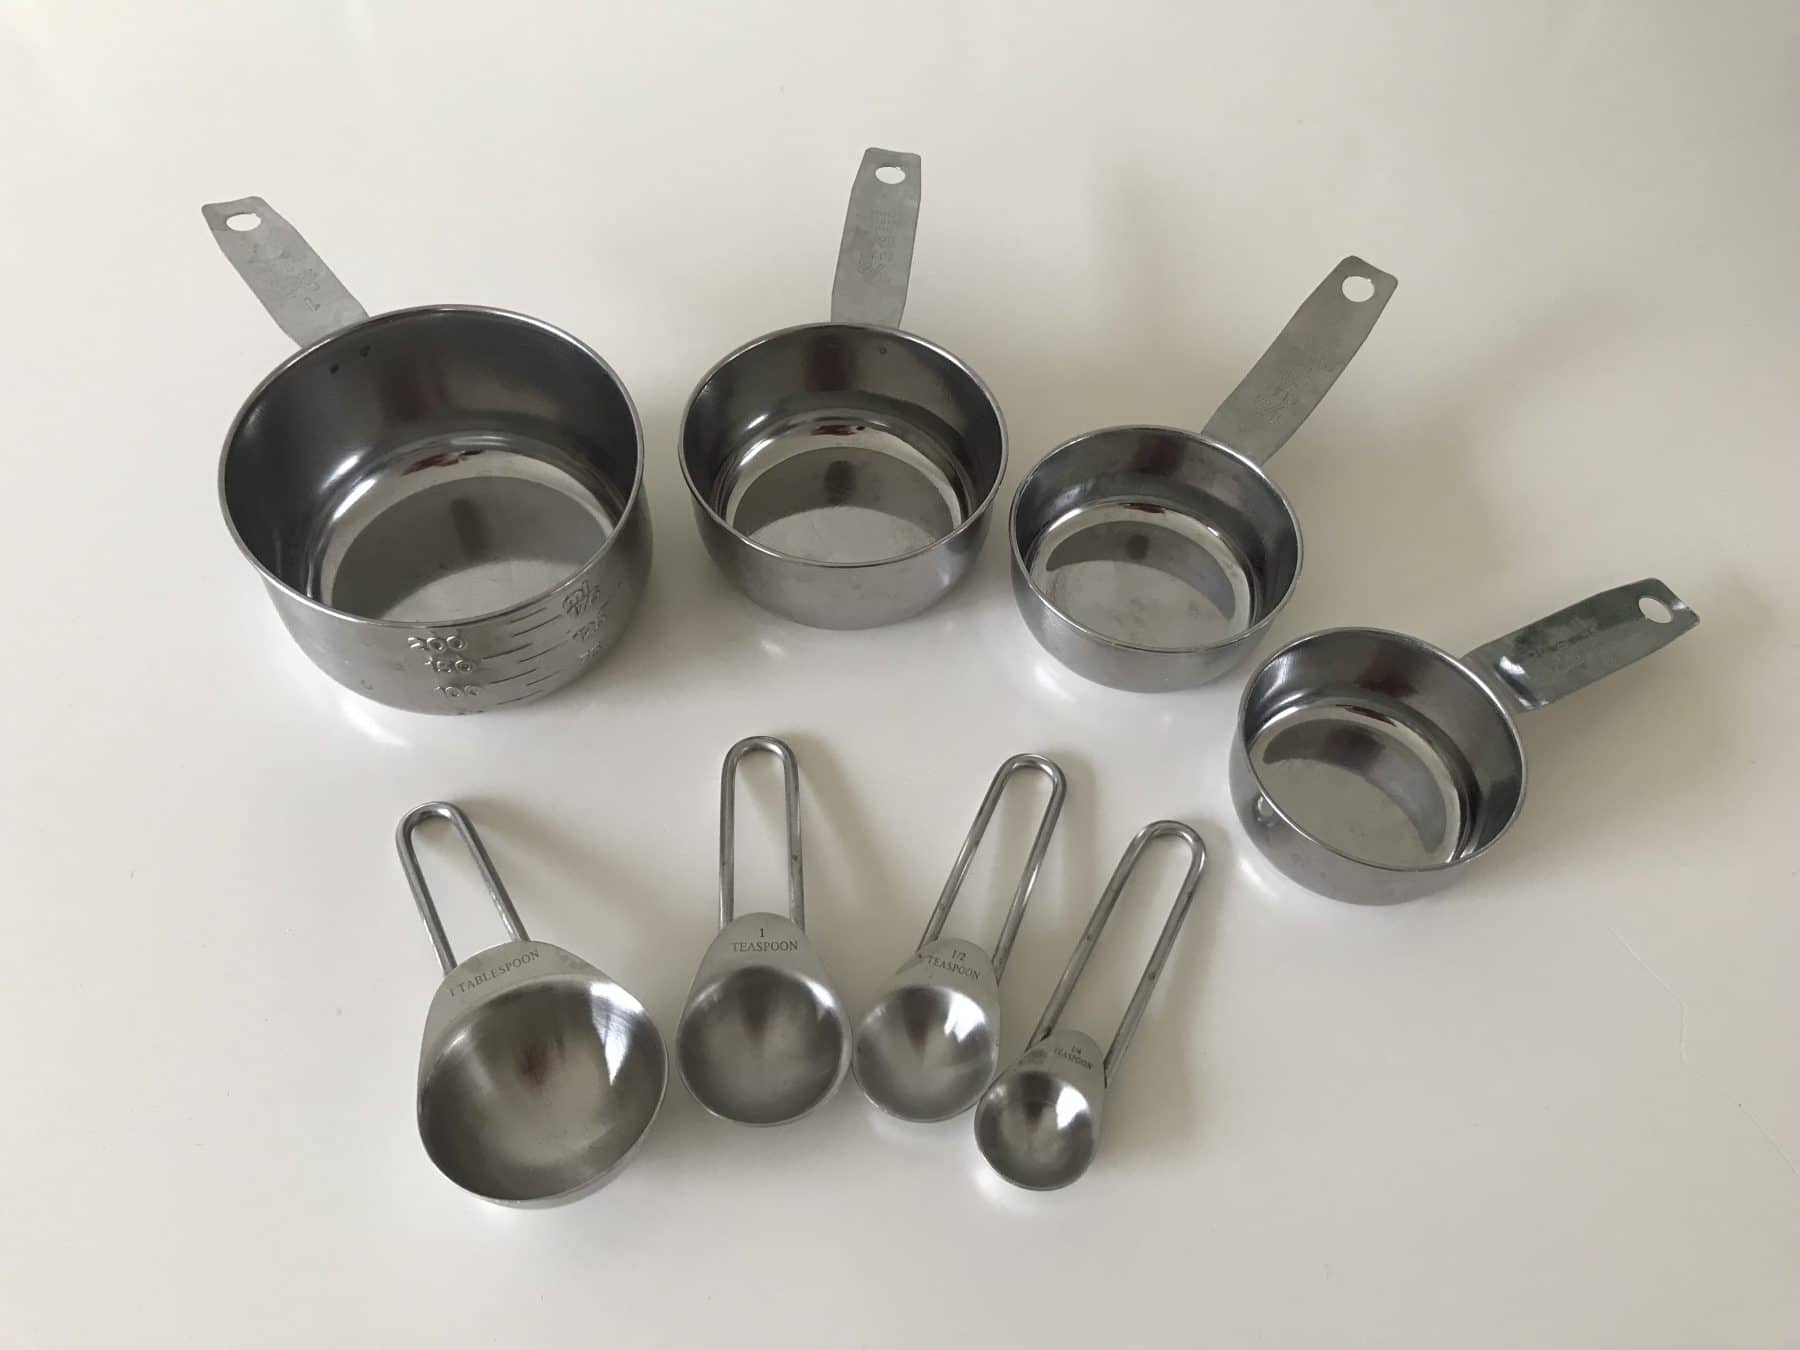 Gewicht van cups, tablespoons en teaspoons